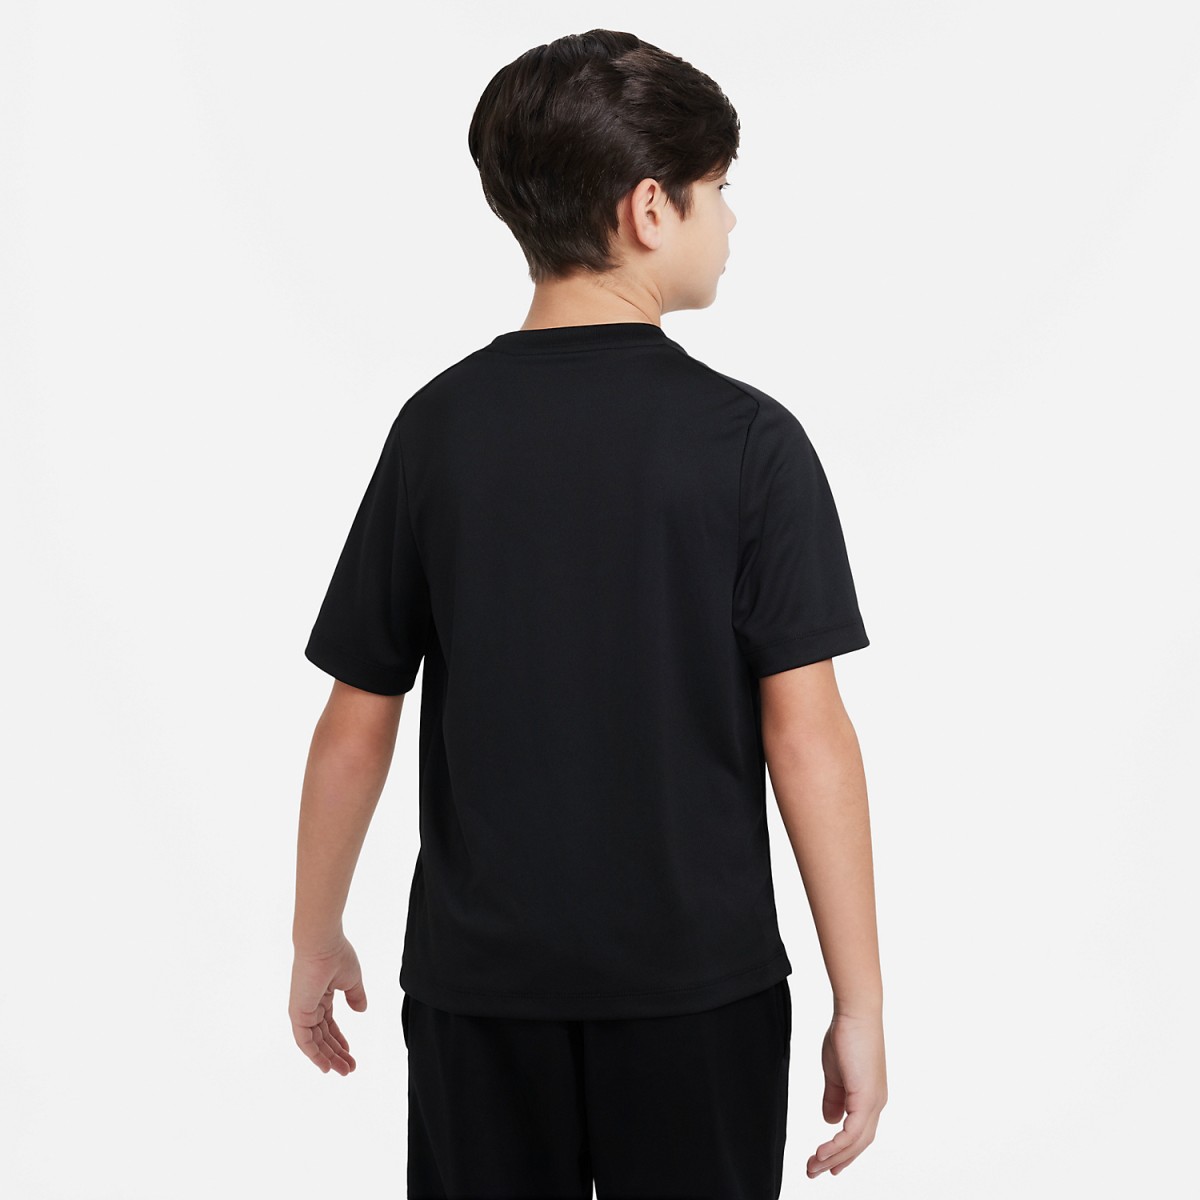 Теннисная футболка детская Nike Multi T-Shirt Boy black/white